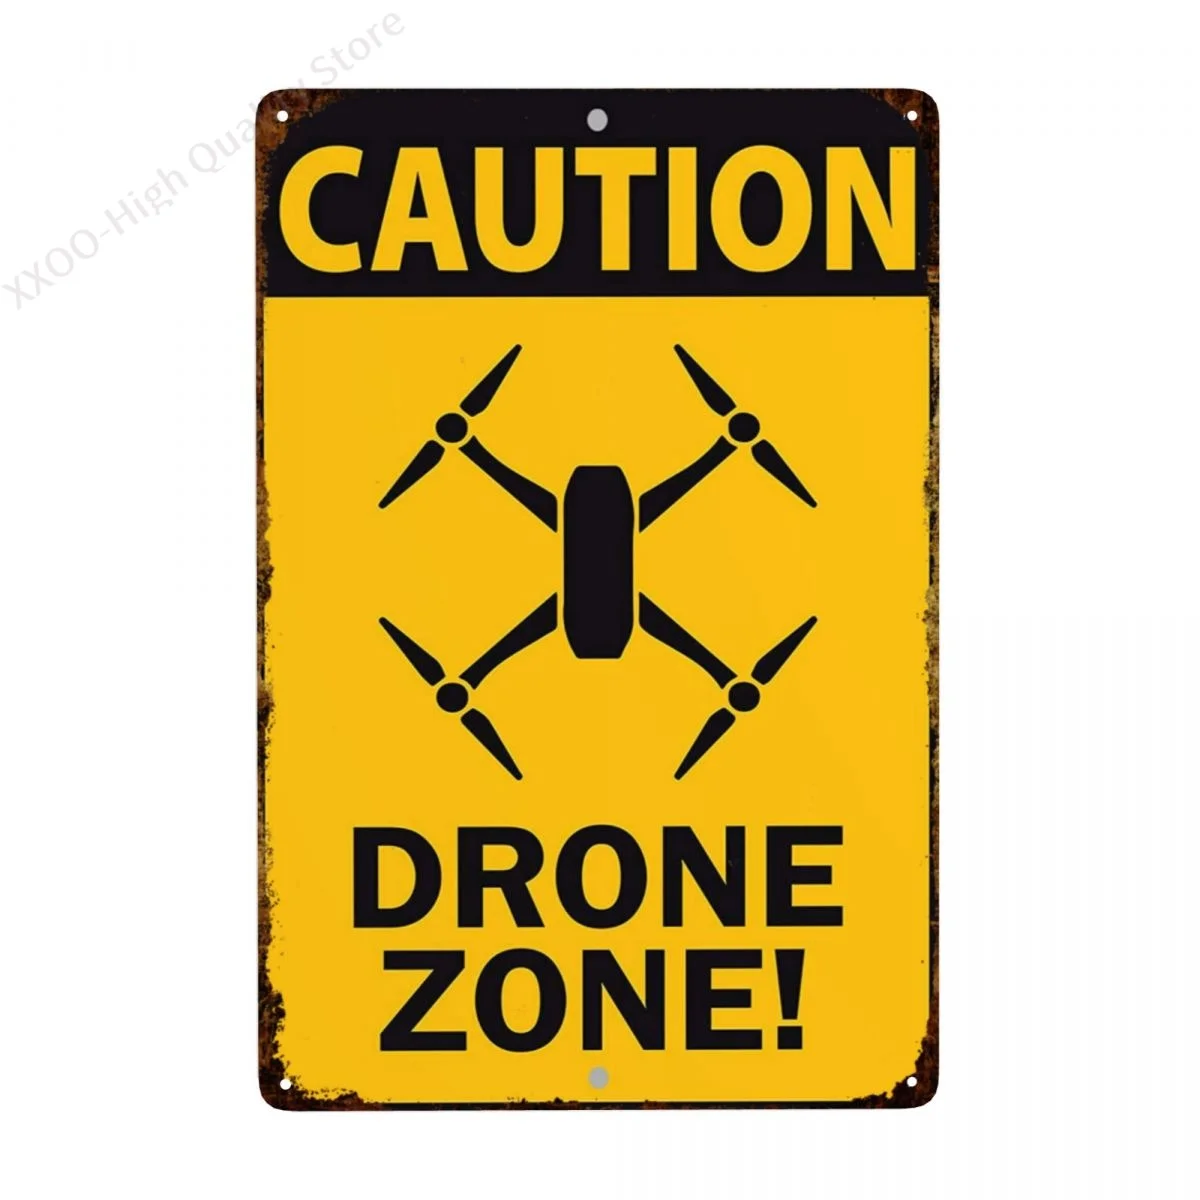 

Afterprints Caution Drone Zone Work Construction Notice Unique Novelty Aluminum Metal Sign 8"x12"